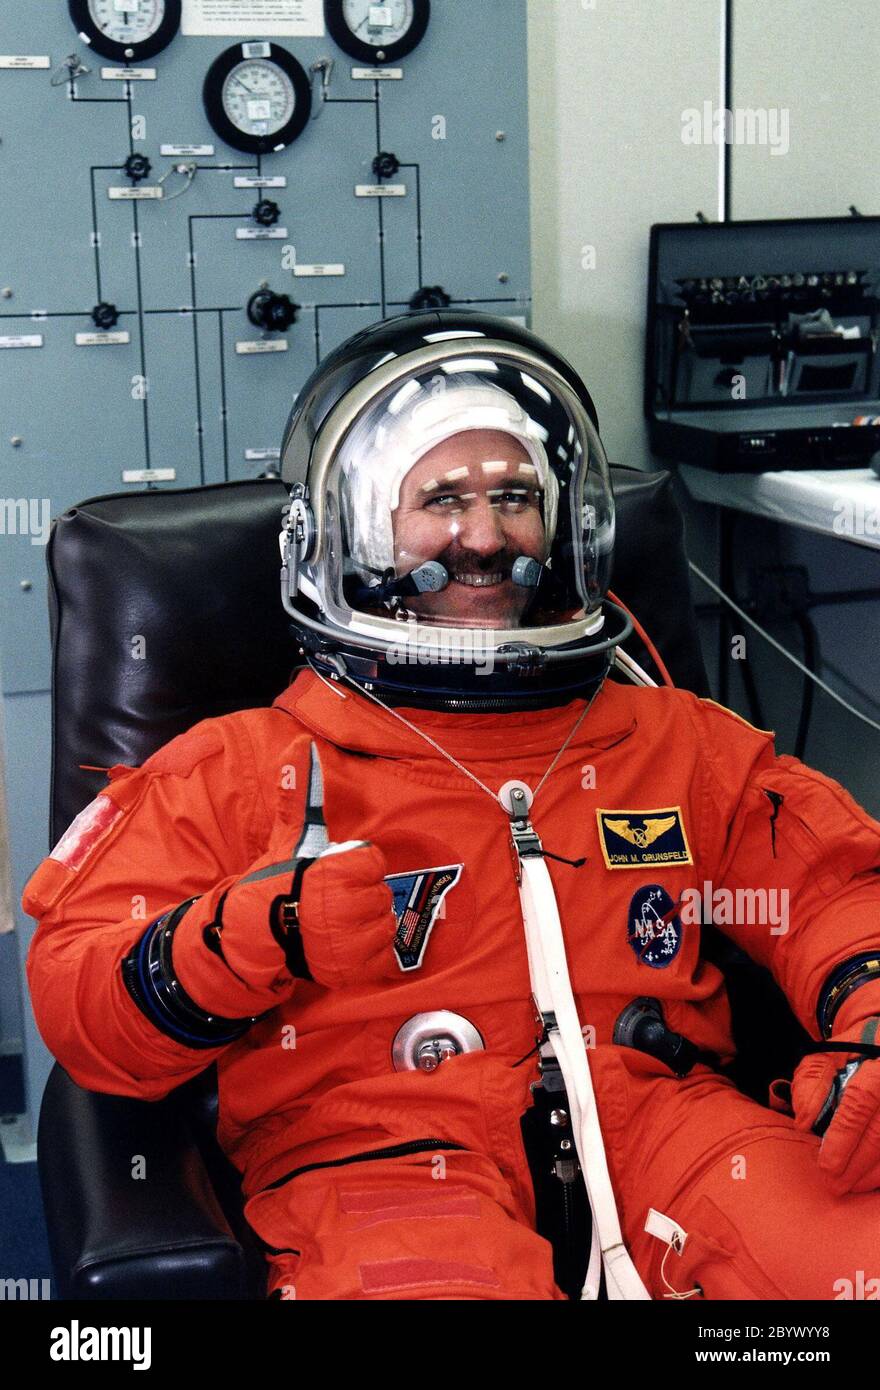 STS-81 Mission Specialist John M. Grunsfeld. Dà un pollice-in su mentre completa il suo suitup di lancio/entrata nell'edificio di operazioni e di controllo (o&C). È al suo secondo volo Shuttle e ha conseguito il dottorato e il master in fisica. Sarà responsabile generale degli esperimenti scientifici durante il volo spaziale di 7 giorni e sorveglierà campioni ambientali e biologici che saranno prelevati sulla stazione spaziale Mir e restituiti alla Terra sullo Space Shuttle Atlantis. Lui e cinque membri dell'equipaggio partiranno a breve dall'o&C e si dirigeranno verso il Launch Pad 39B, dove lo Space Shuttle Atlantis sarà Foto Stock